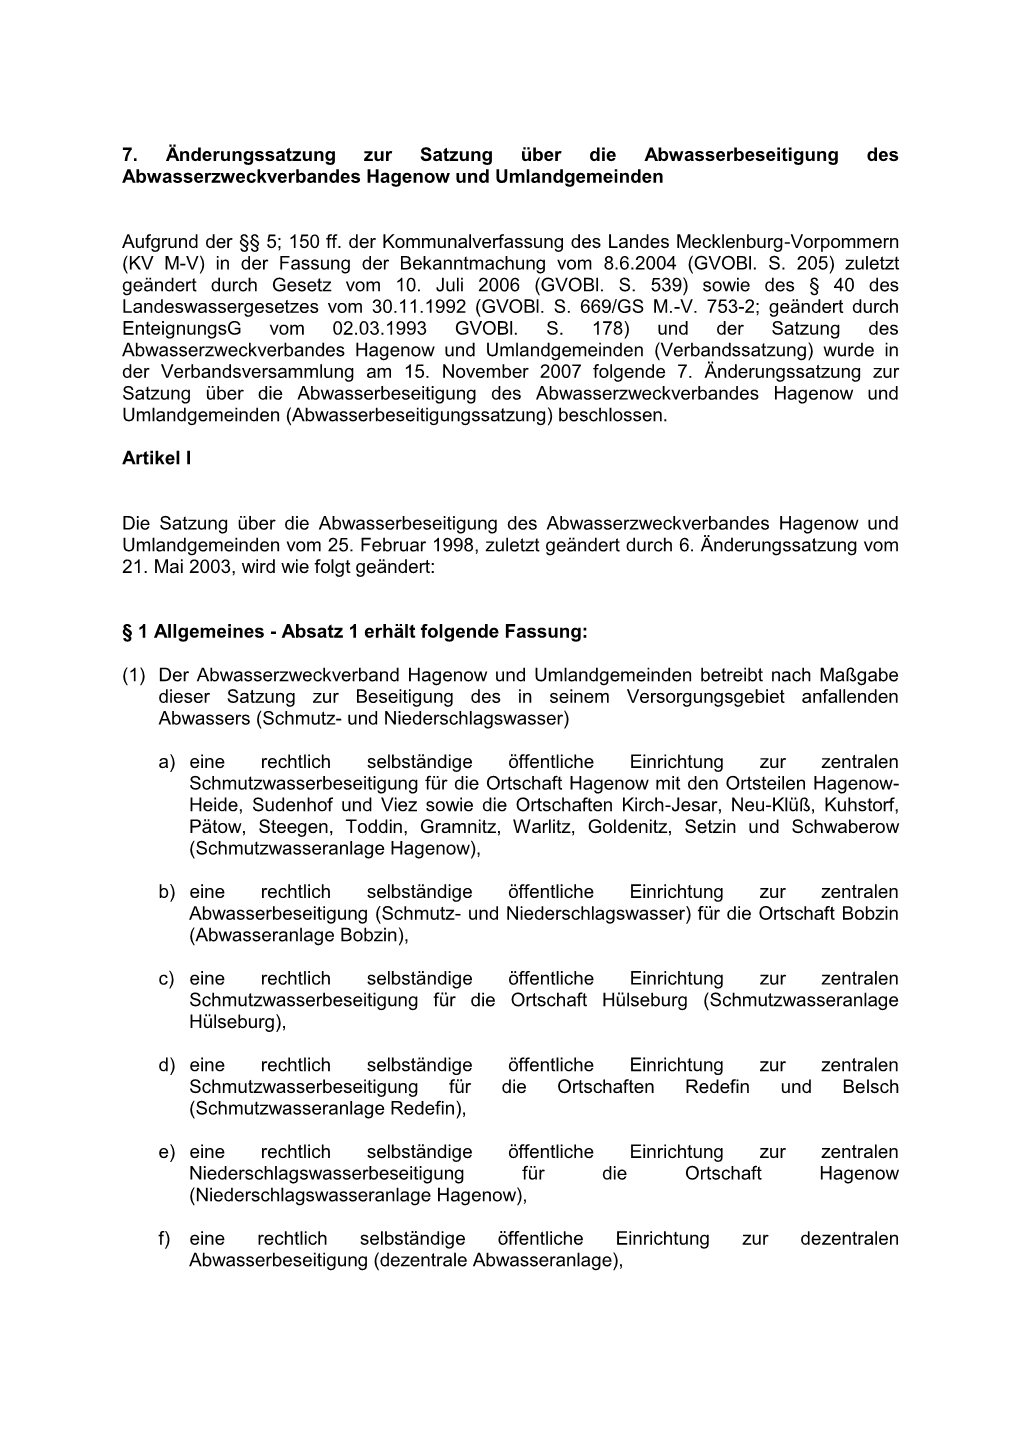 7. Änderungssatzung Zur Satzung Über Die Abwasserbeseitigung Des Abwasserzweckverbandes Hagenow Und Umlandgemeinden